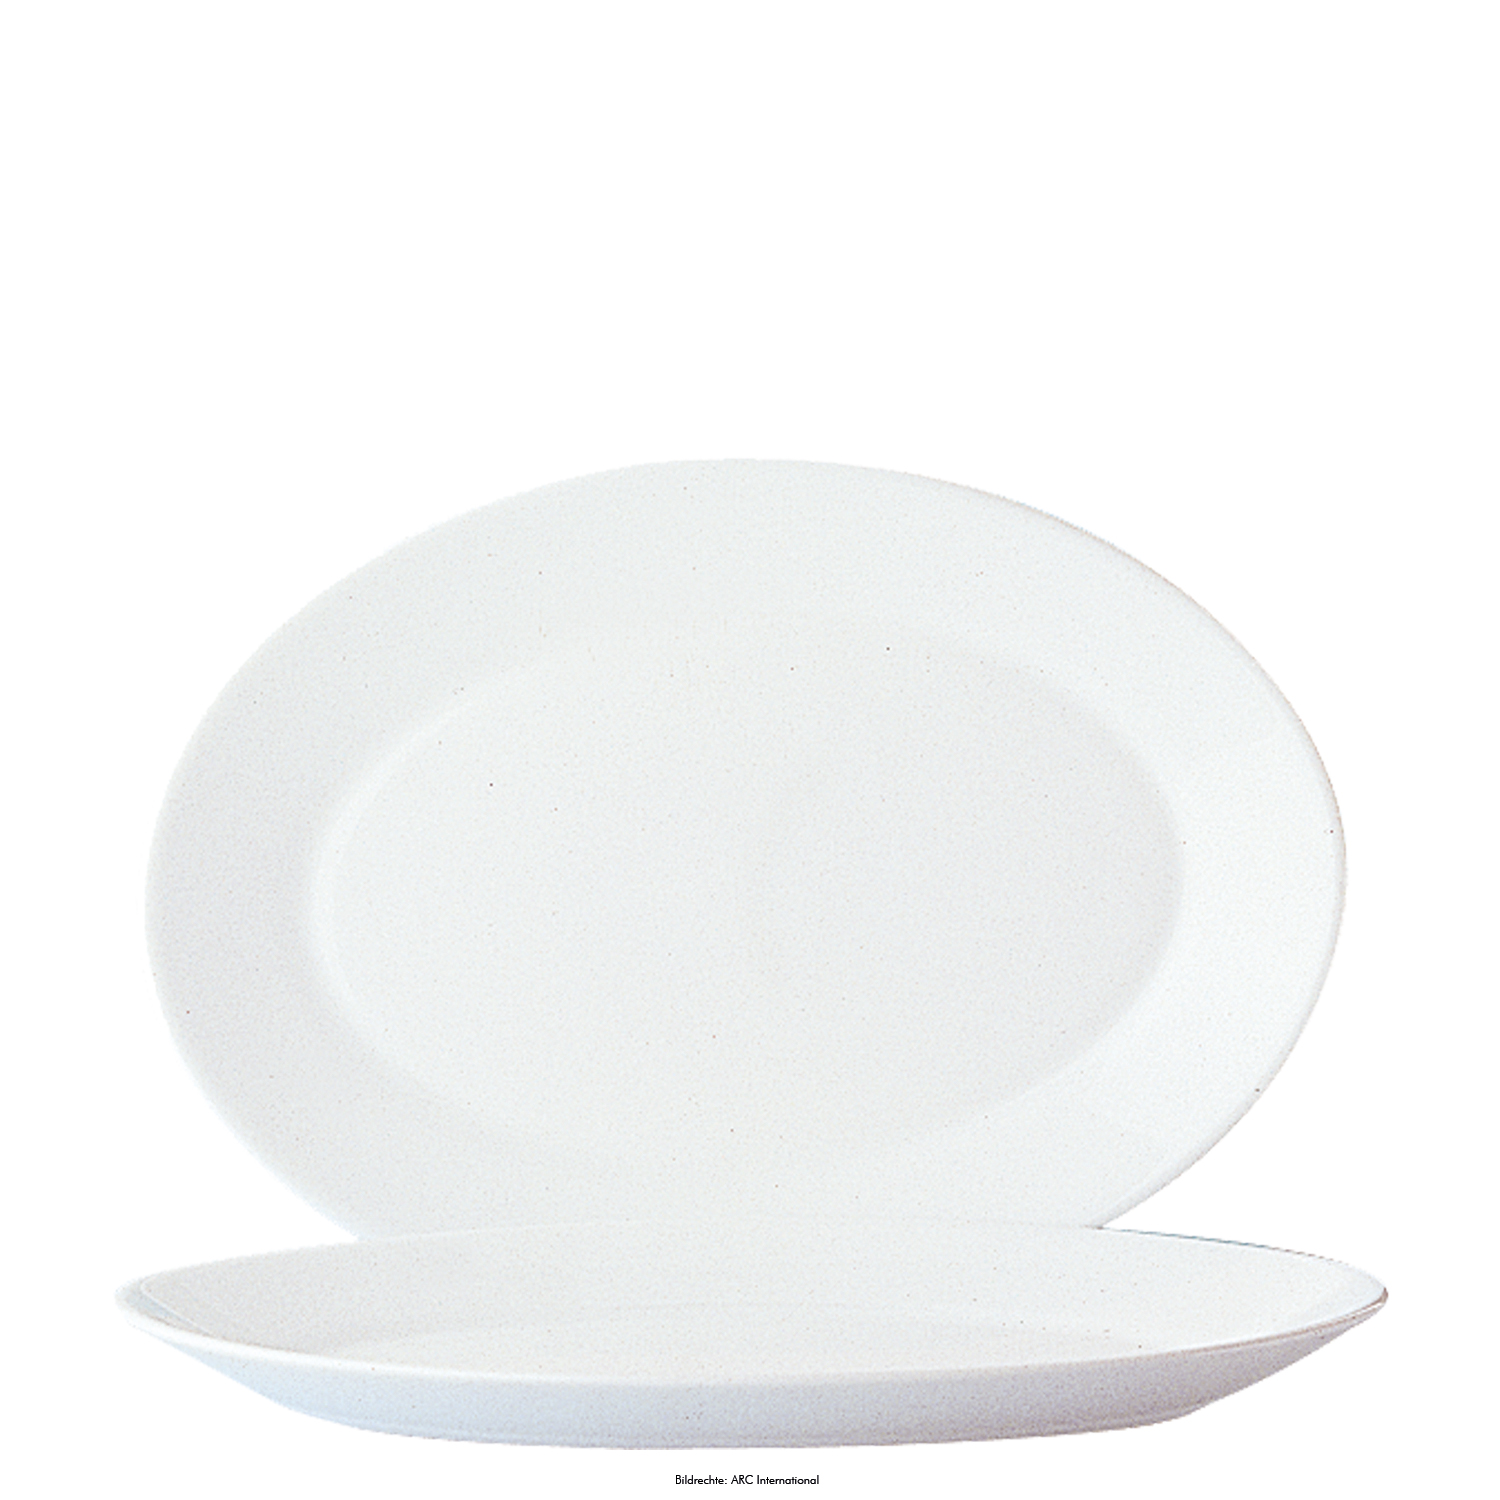 Platte oval 29x21,5cm RESTAURANT weiß